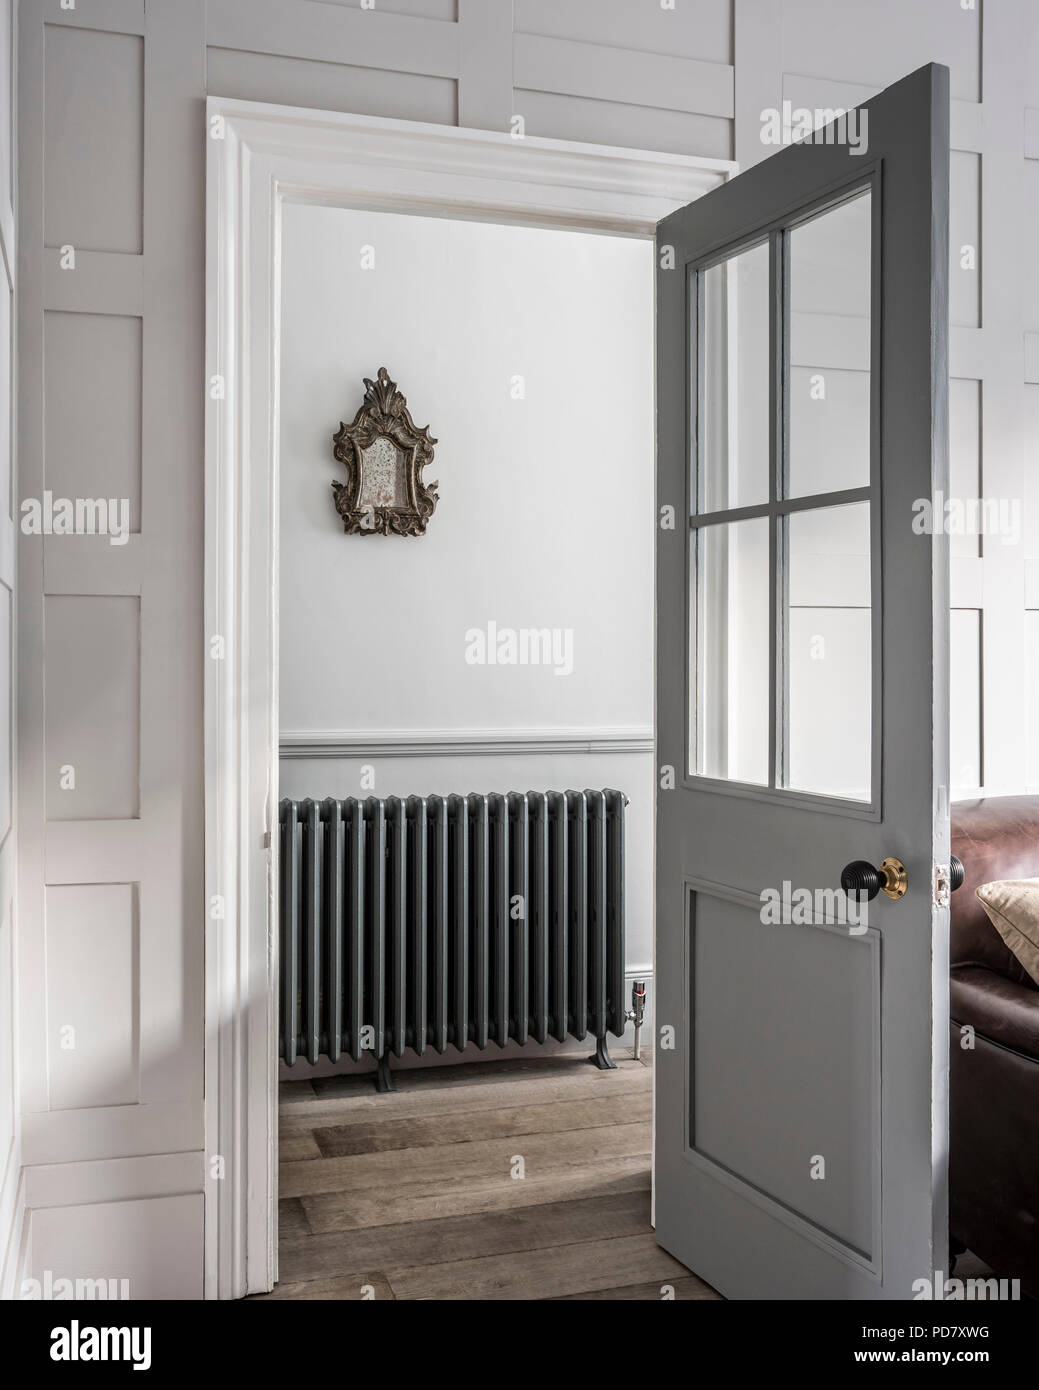 Voir par porte ouverte sur salle avec le modèle néo-classique de radiateur Arroll. Années 1750 Un miroir doré est suspendu au-dessus du radiateur. Banque D'Images